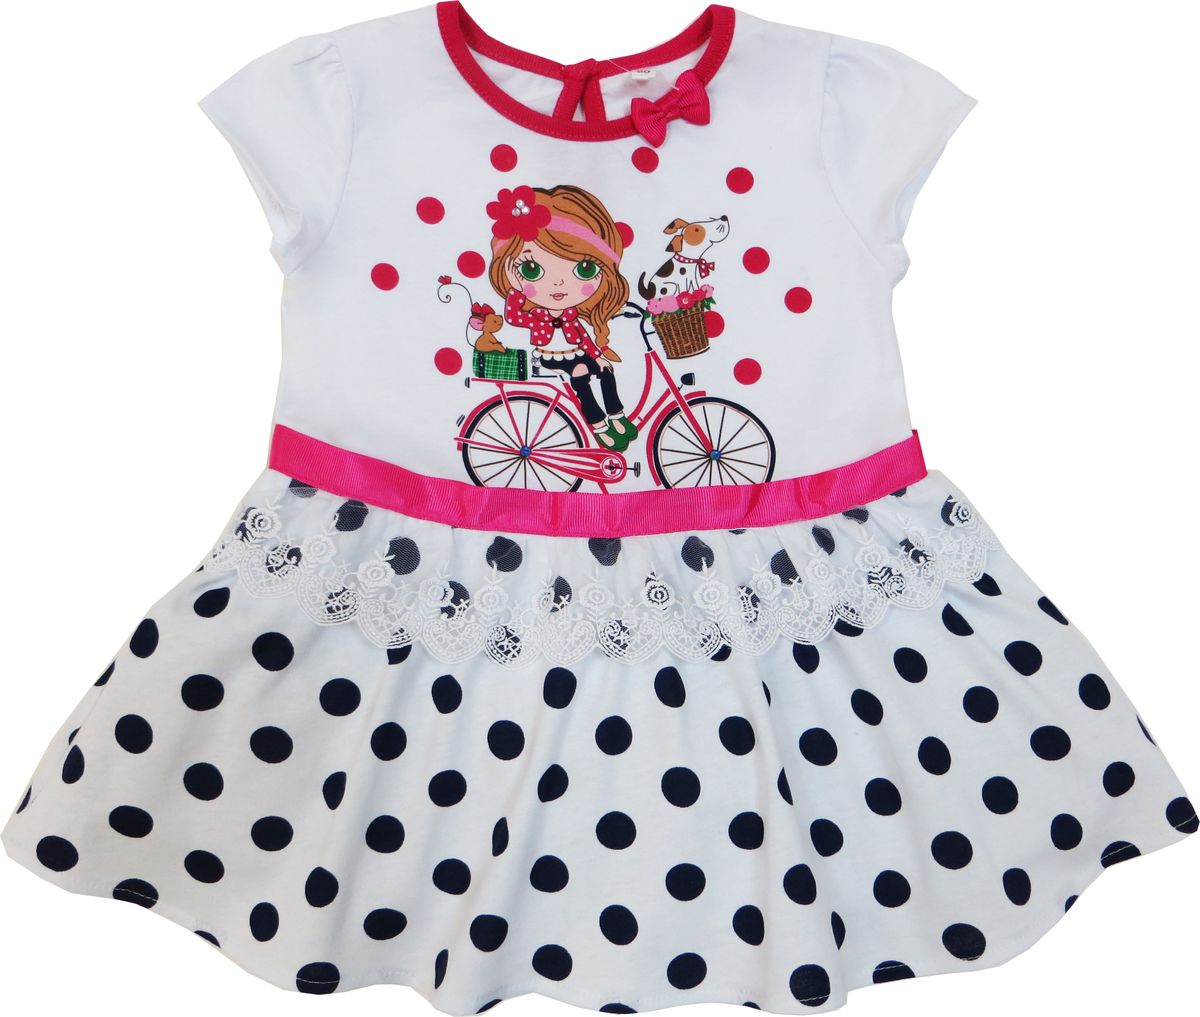 Платье Soni Kids Каникулы Мари, цвет: белый, красный. Л7105001-110к. Размер 110